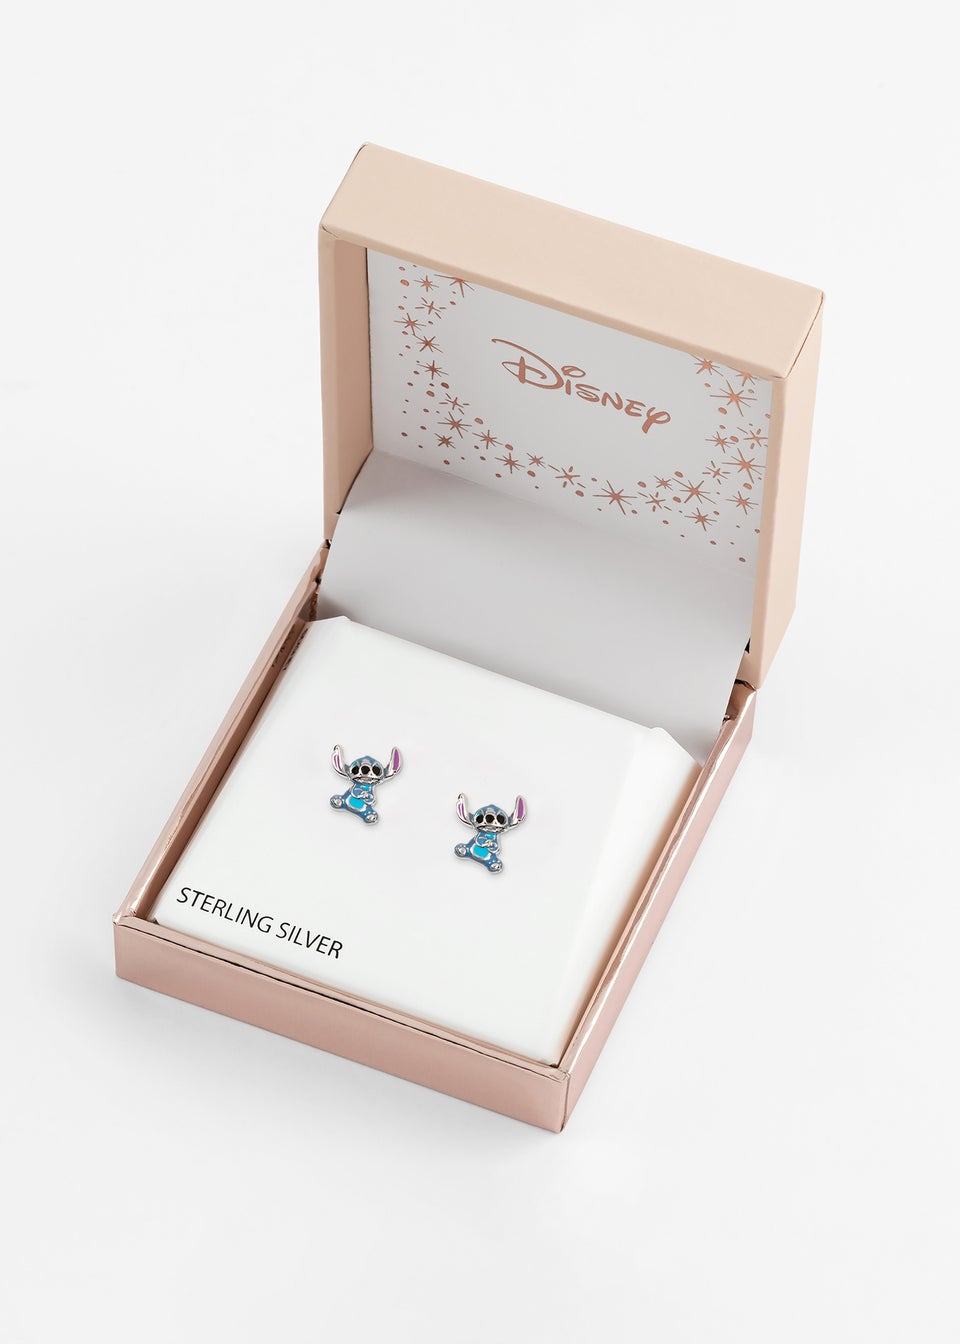 Disney Lilo & Stitch Sterling Silver Enamel Stitch Stud Earrings